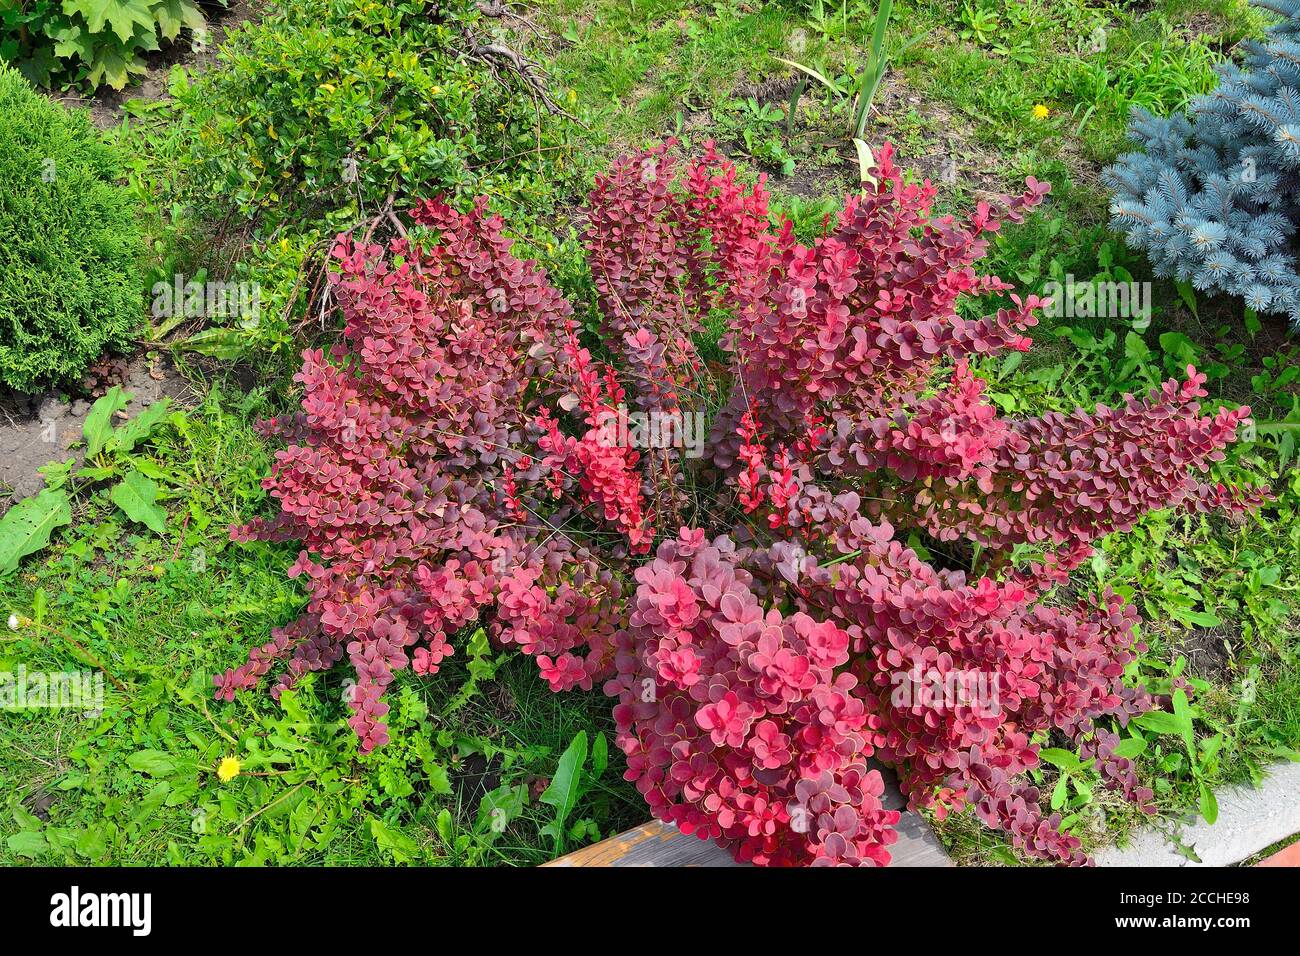 Cultivar Thunbergs (Berberis thunbergii 'admiración') en el jardín rocoso. Arbusto ornamental brillante con borde amarillo sobre hojas de color rojo-borgoña Foto de stock